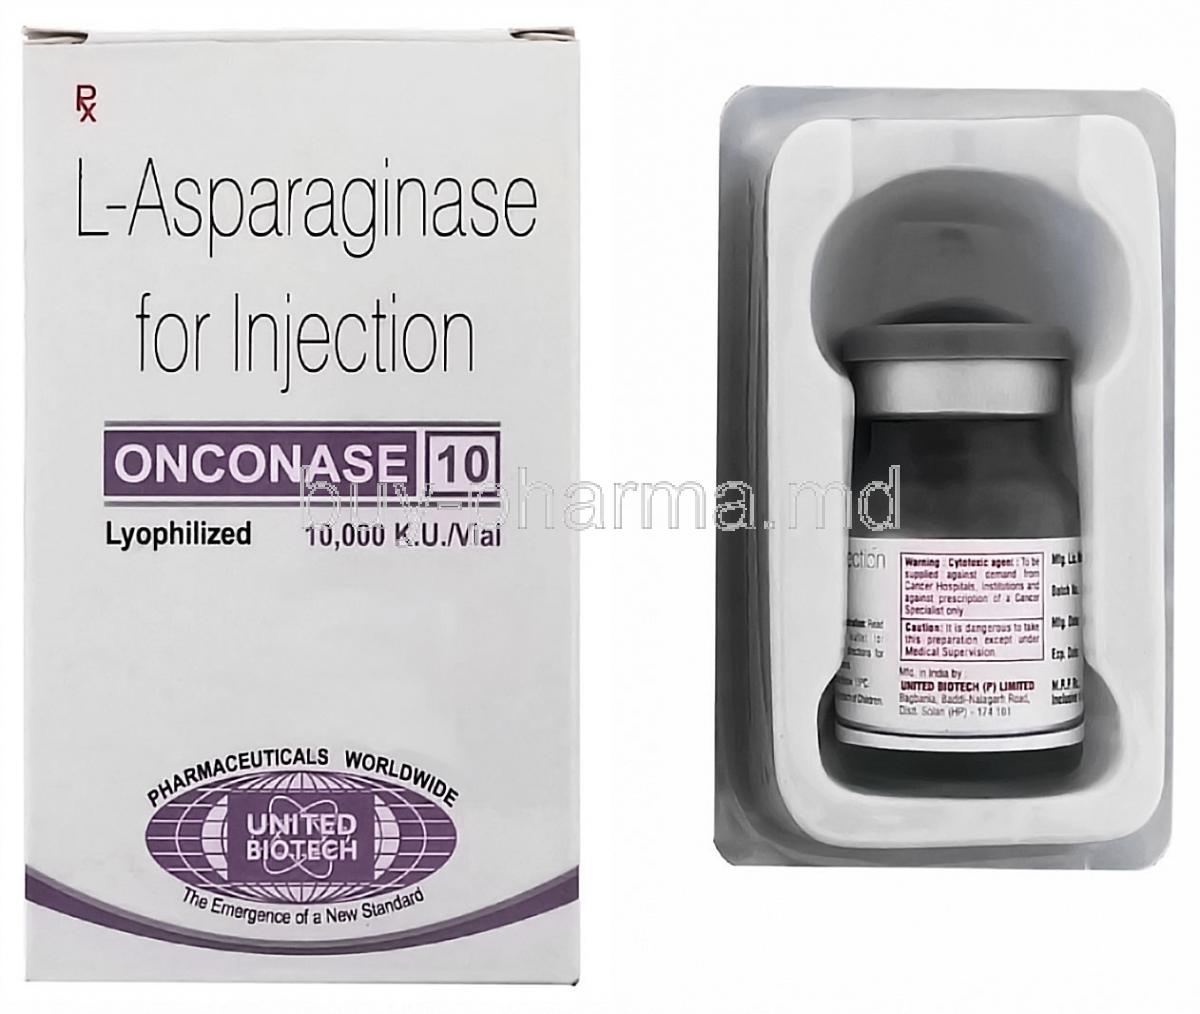 Onconase 10, Generic Elspar, L-Asparaginase